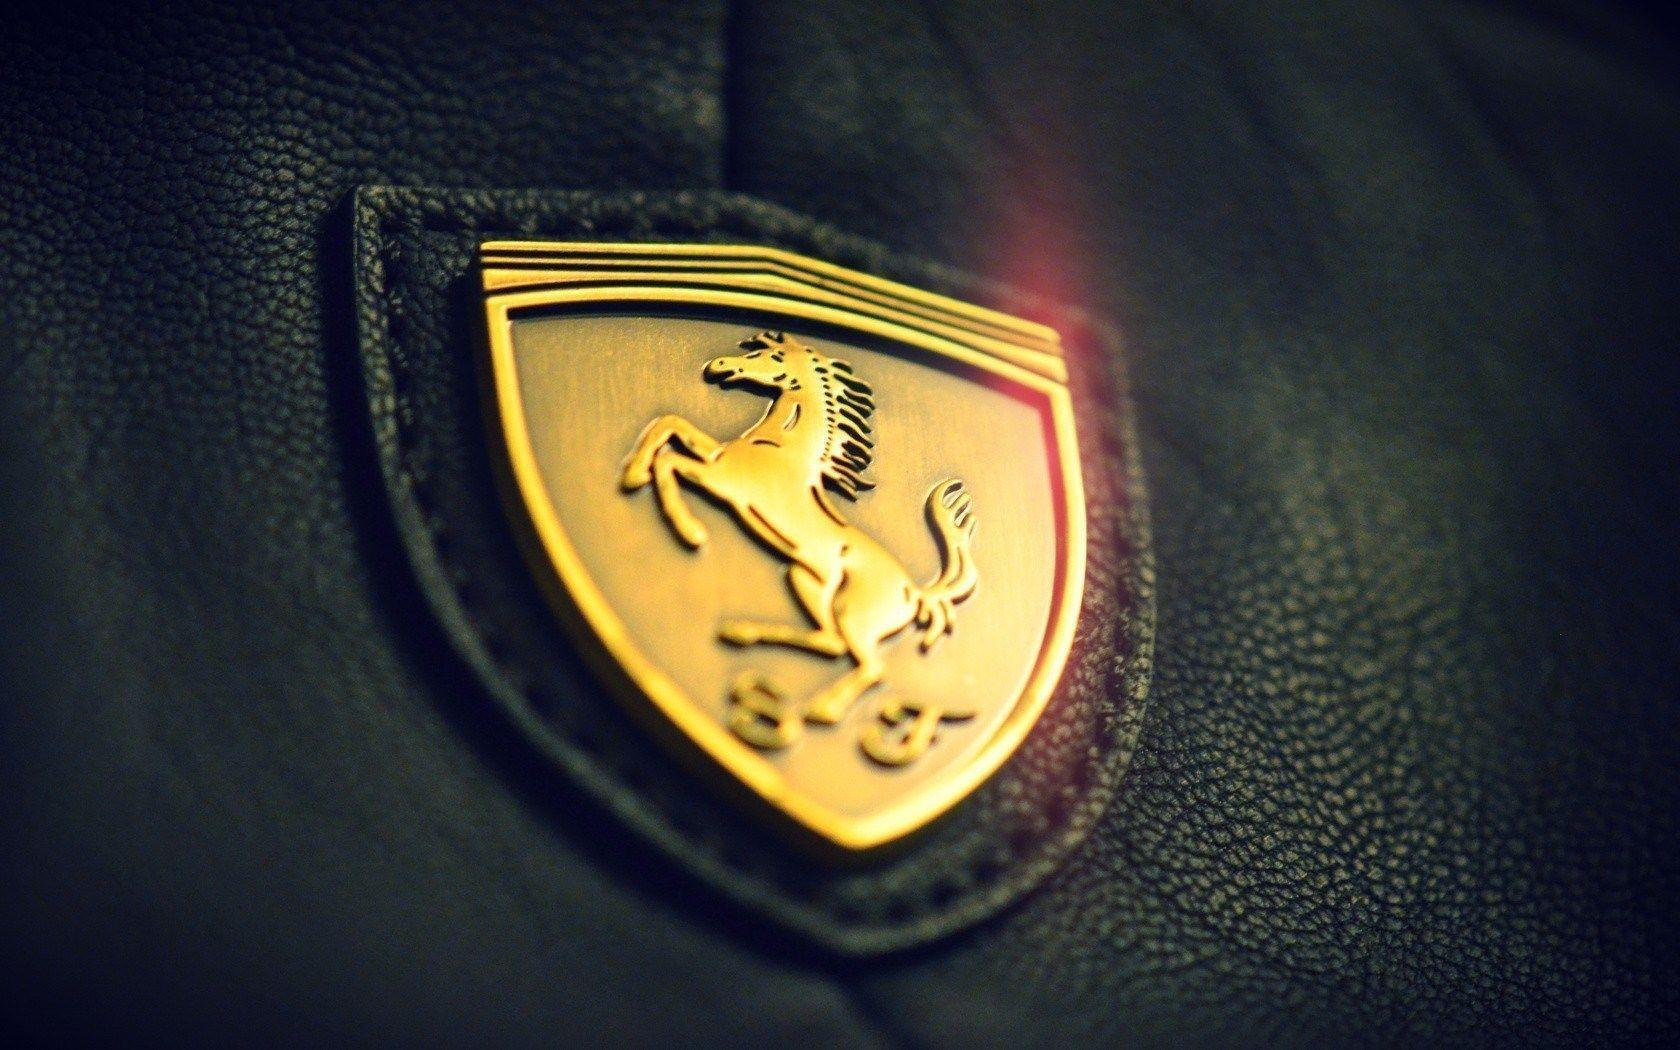 Ferrari Logo Wallpaper. Ferrari Logo Wallpaper HD. Ferrari Logo